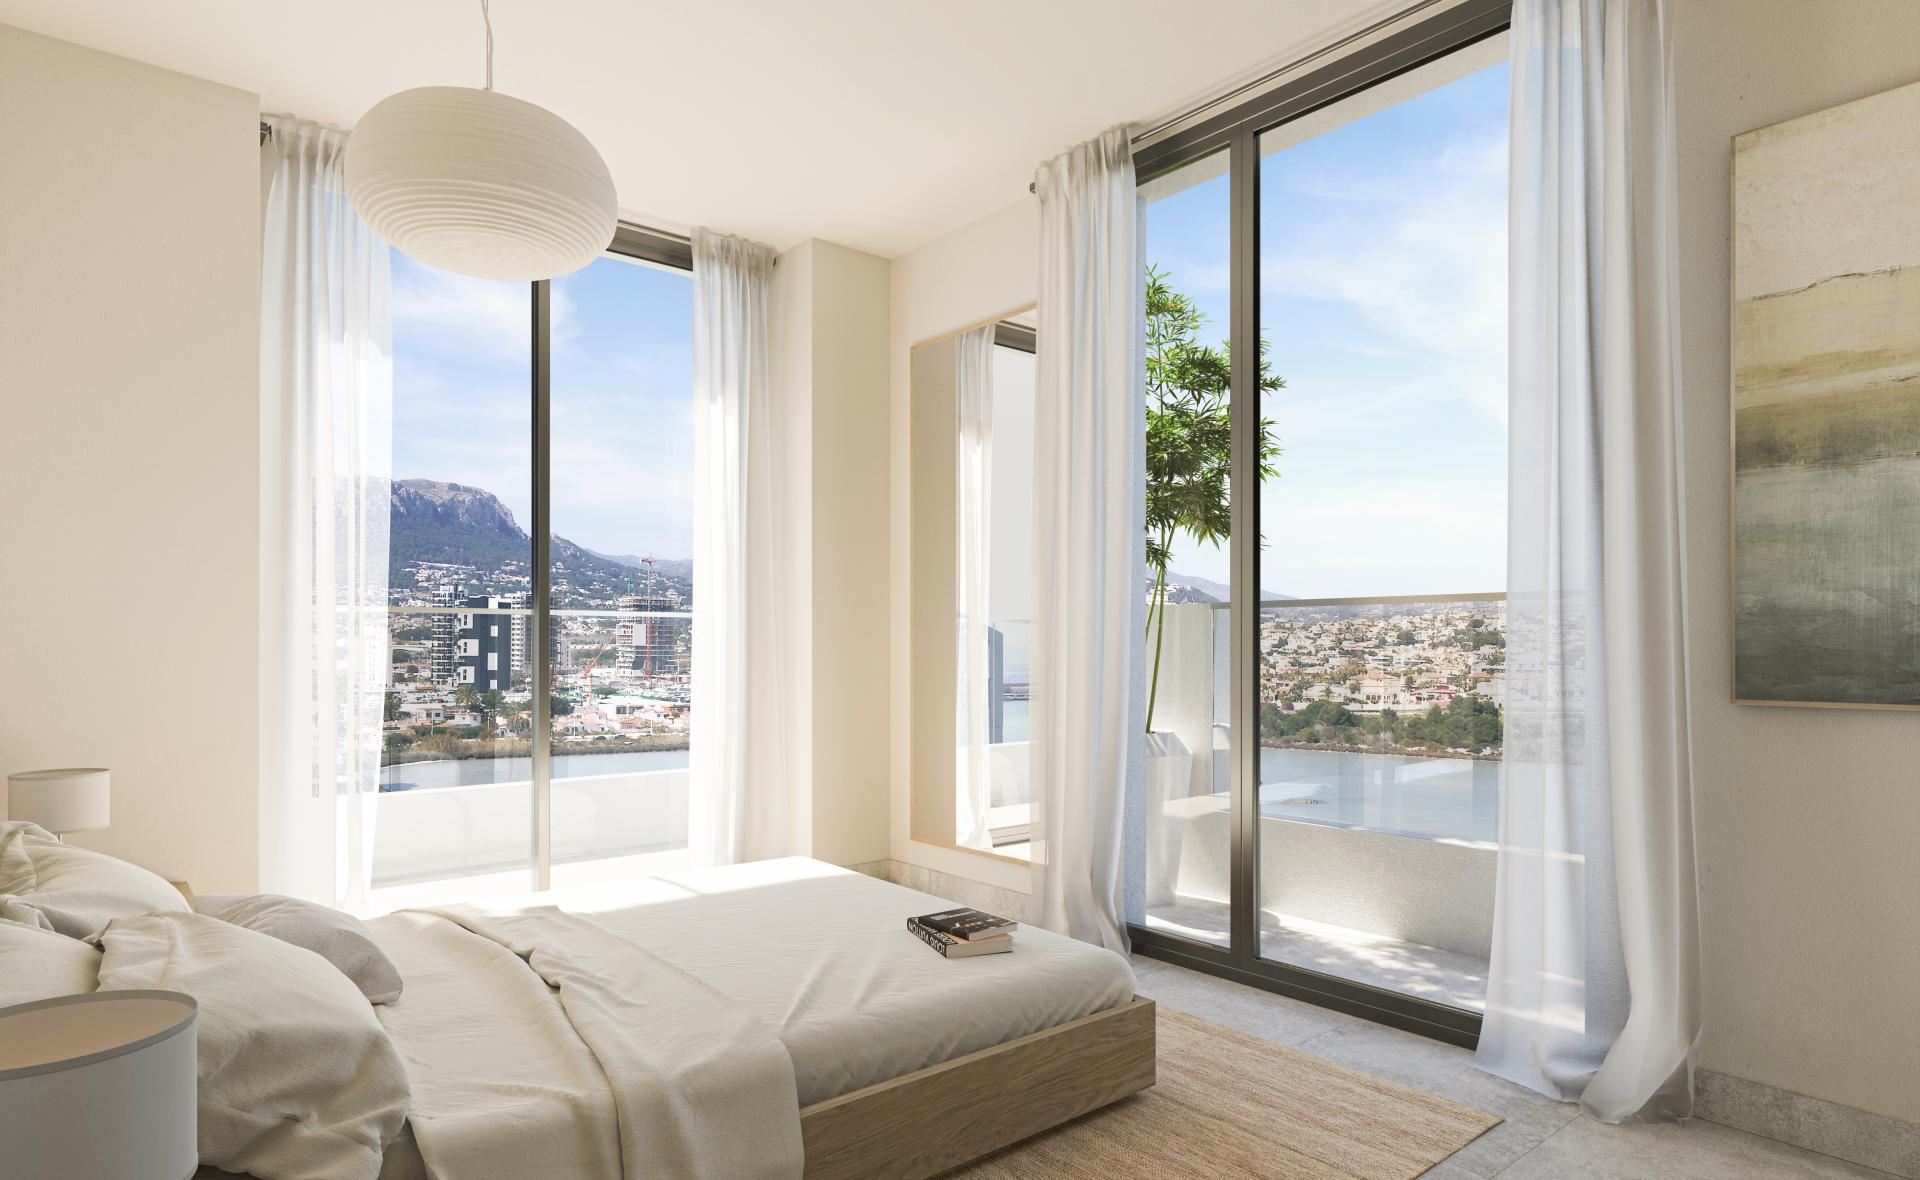 2 Slaapkamer Appartement met terras in Calpe - Nieuwbouw in Medvilla Spanje